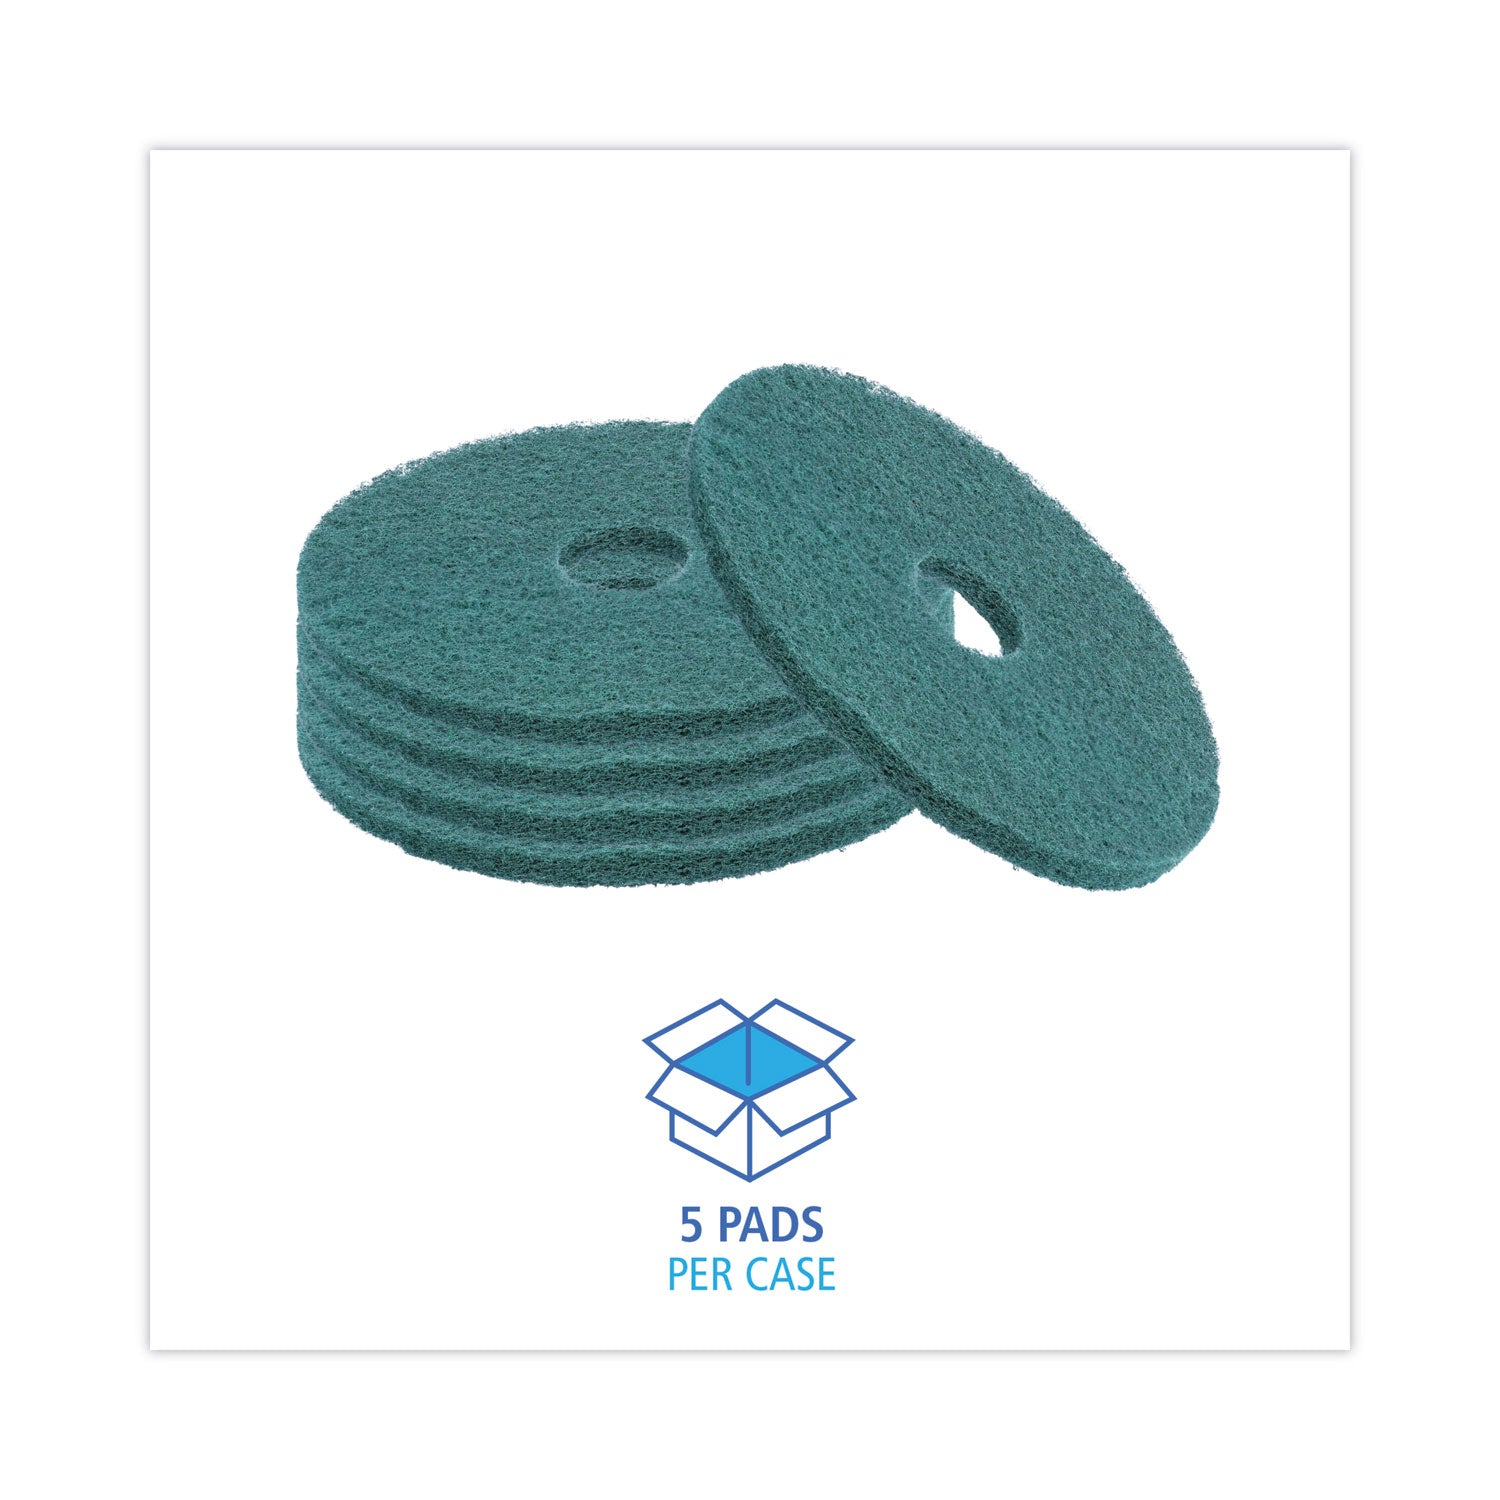 heavy-duty-scrubbing-floor-pads-16-diameter-green-5-carton_bwk4016gre - 3